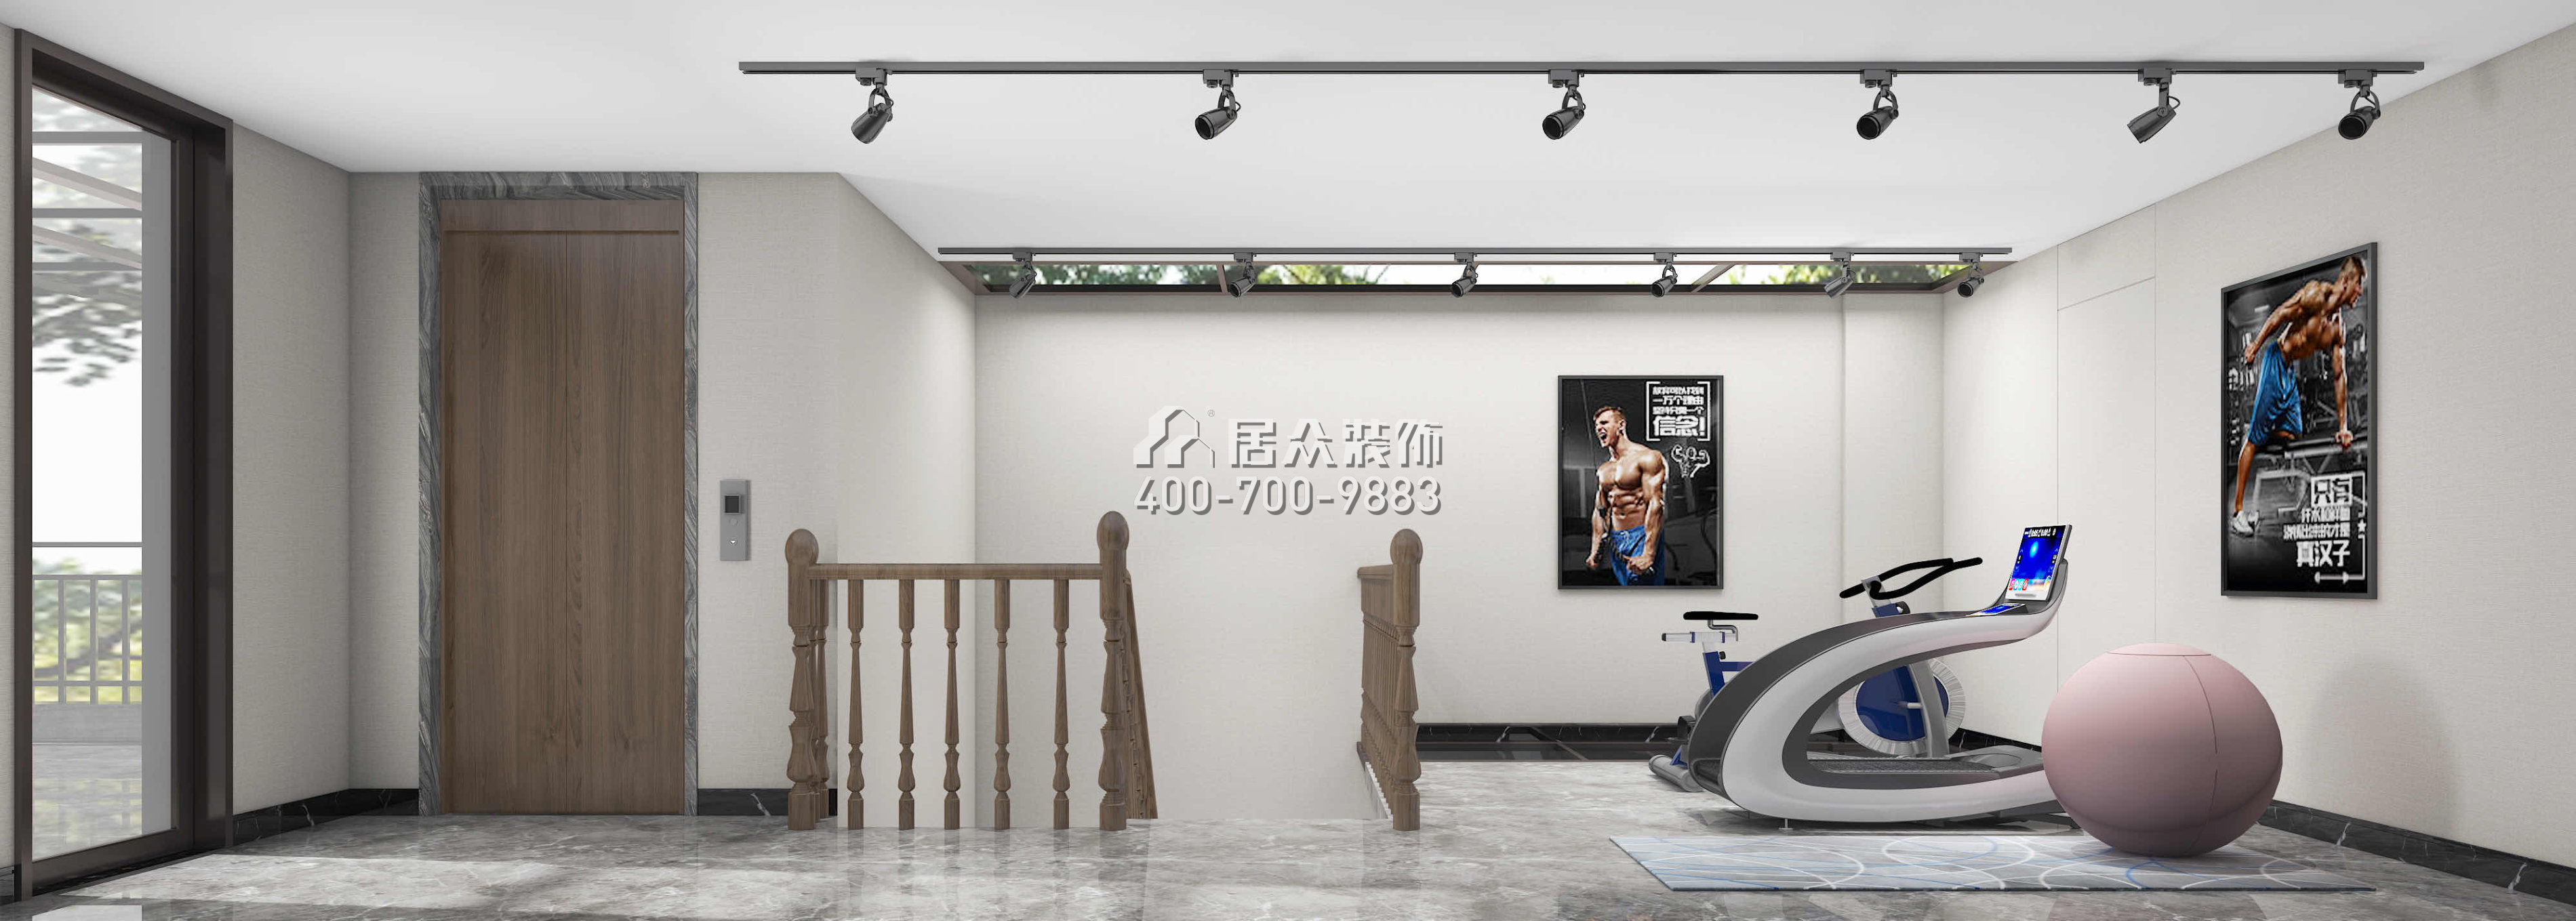 观园280平方米混搭风格别墅户型家庭健身房（中国）科技有限公司官网效果图